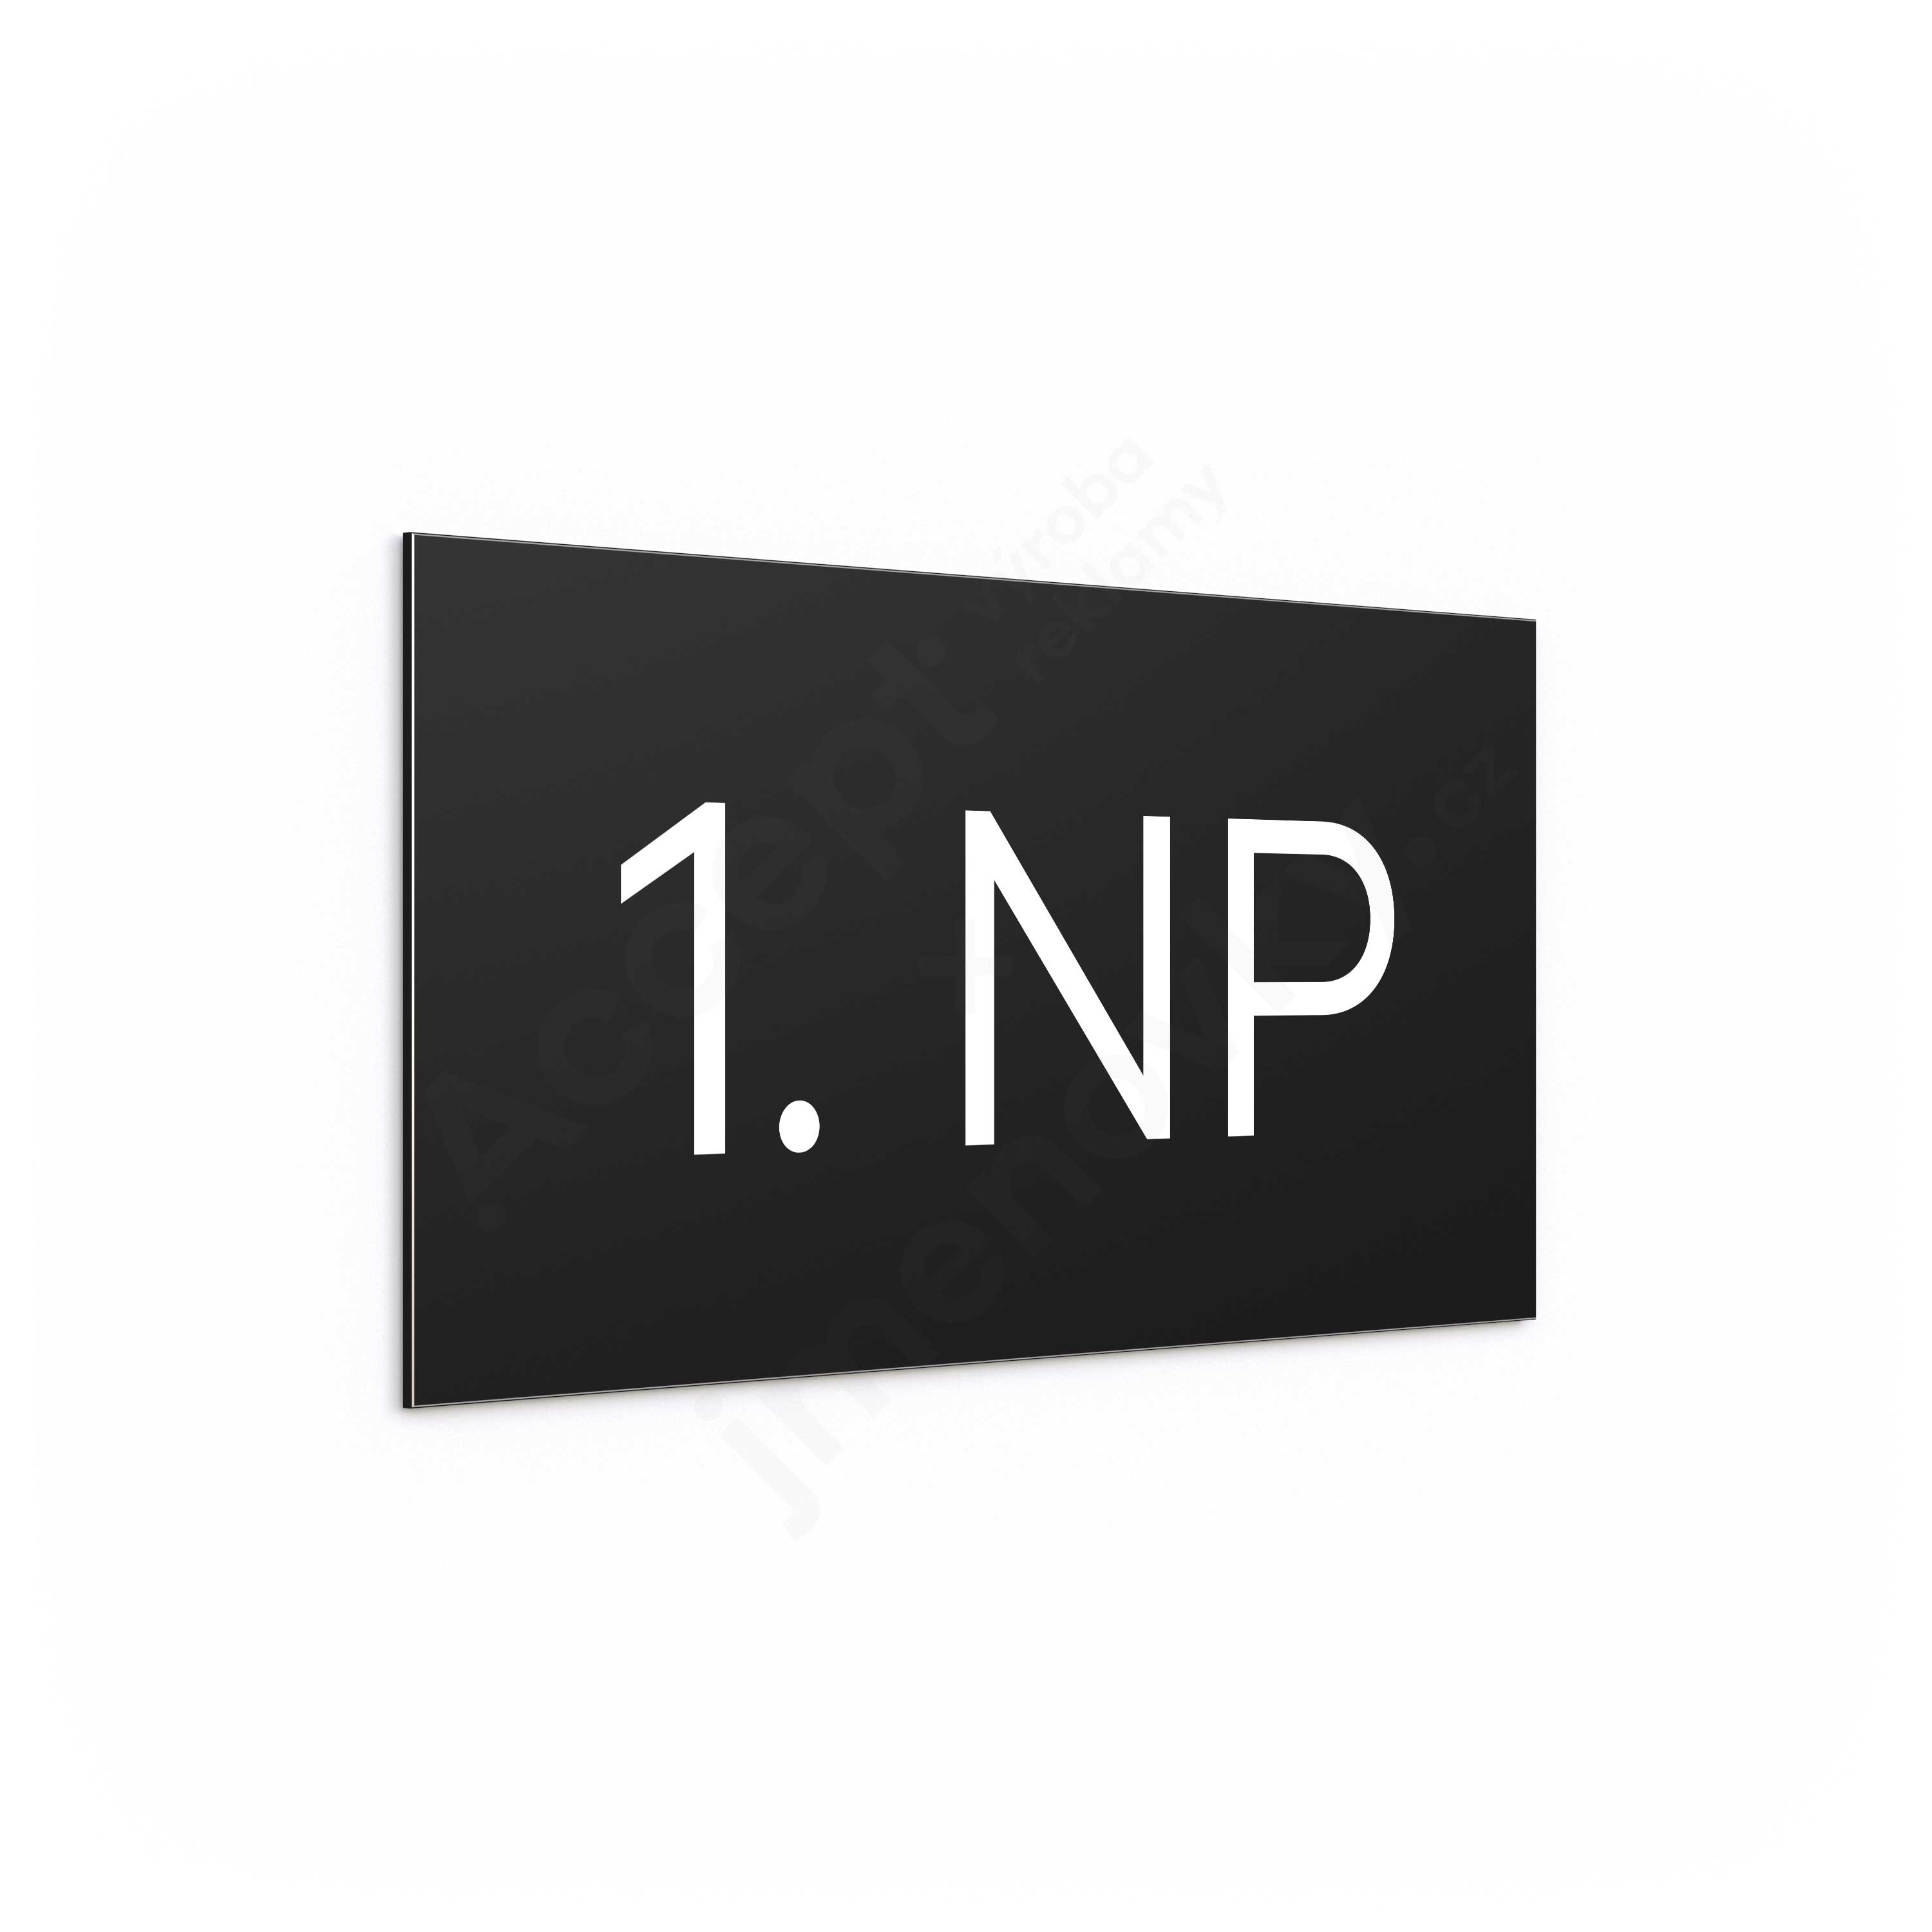 Označení podlaží "1. NP" - černá tabulka - bílý popis